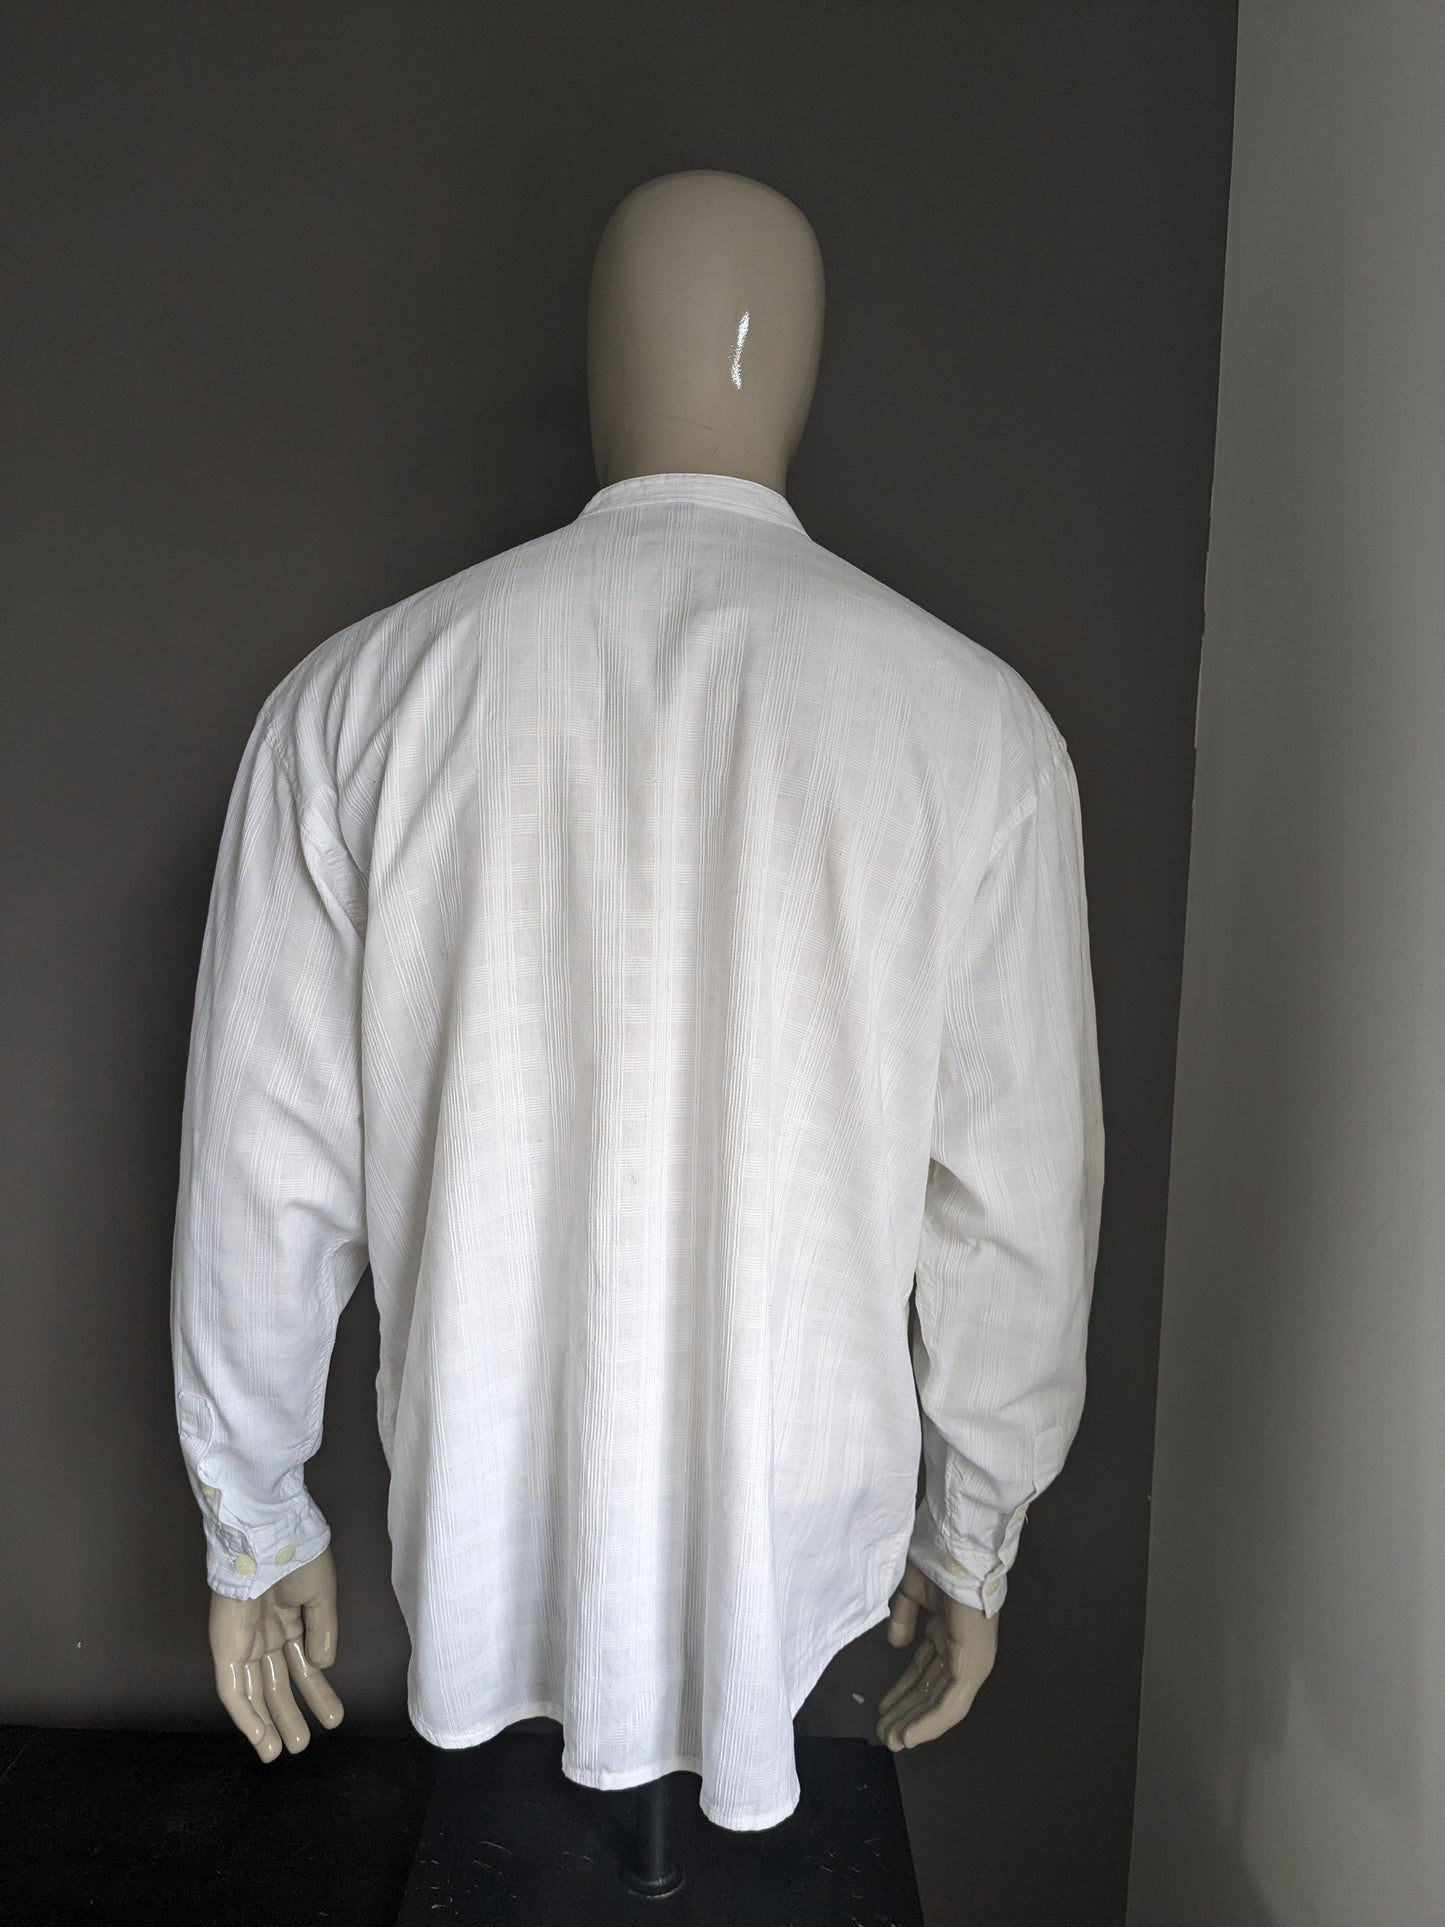 Camisa Vintage Gaucho Company con aplicación de veteranos y MAO / agricultores / cuello en pie. Motivo blanco. Tamaño L / XL.